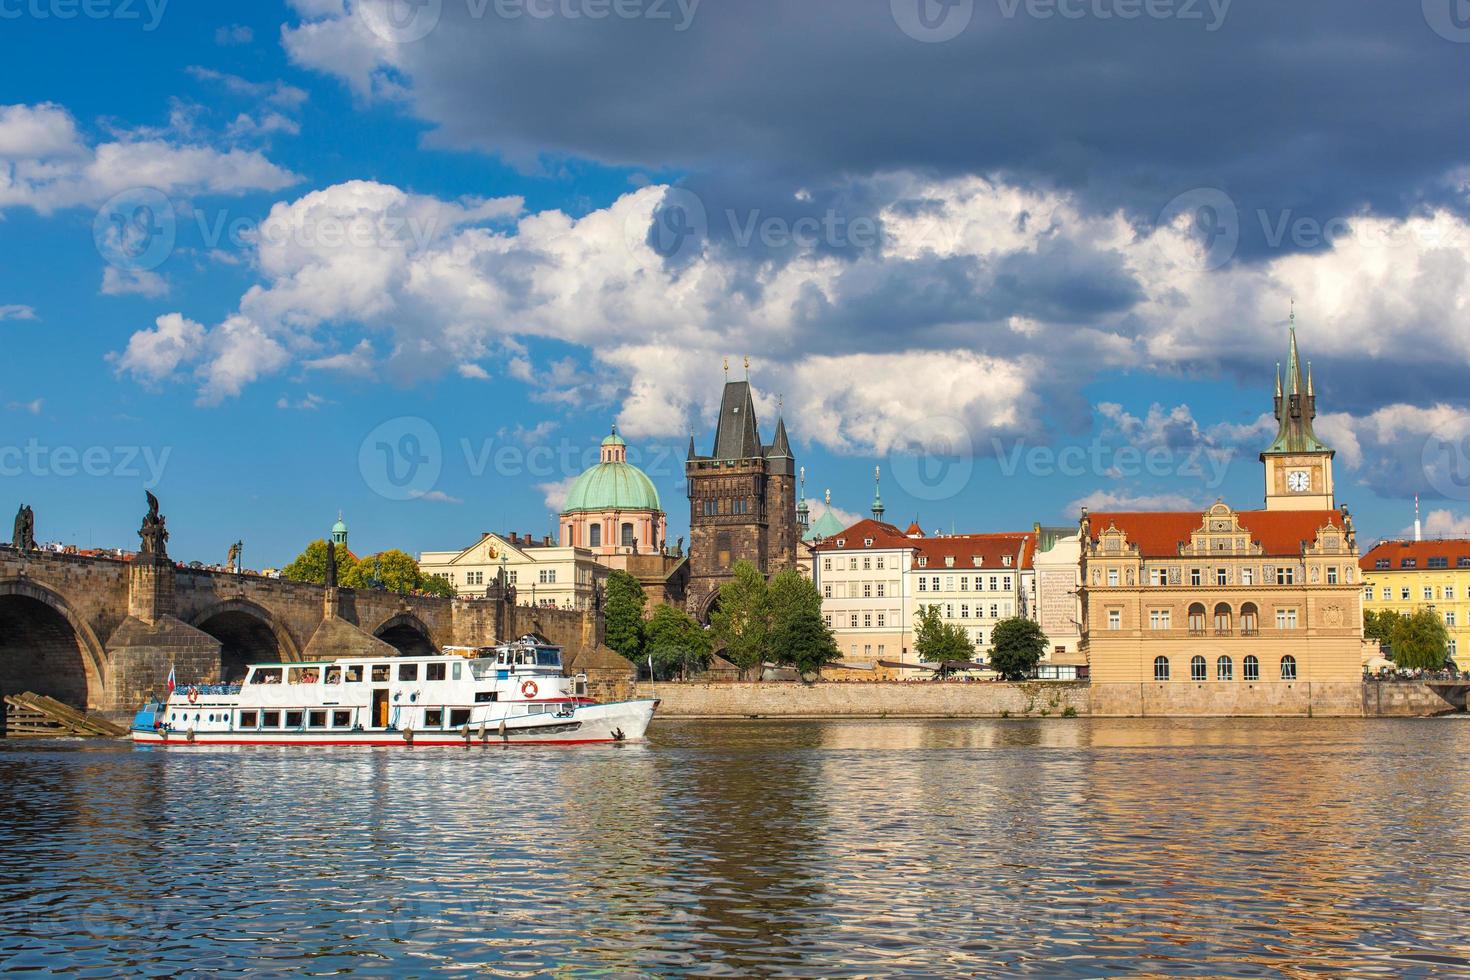 Prague, République tchèque, pont charles sur la rivière vltava sur laquelle navigue le navire photo